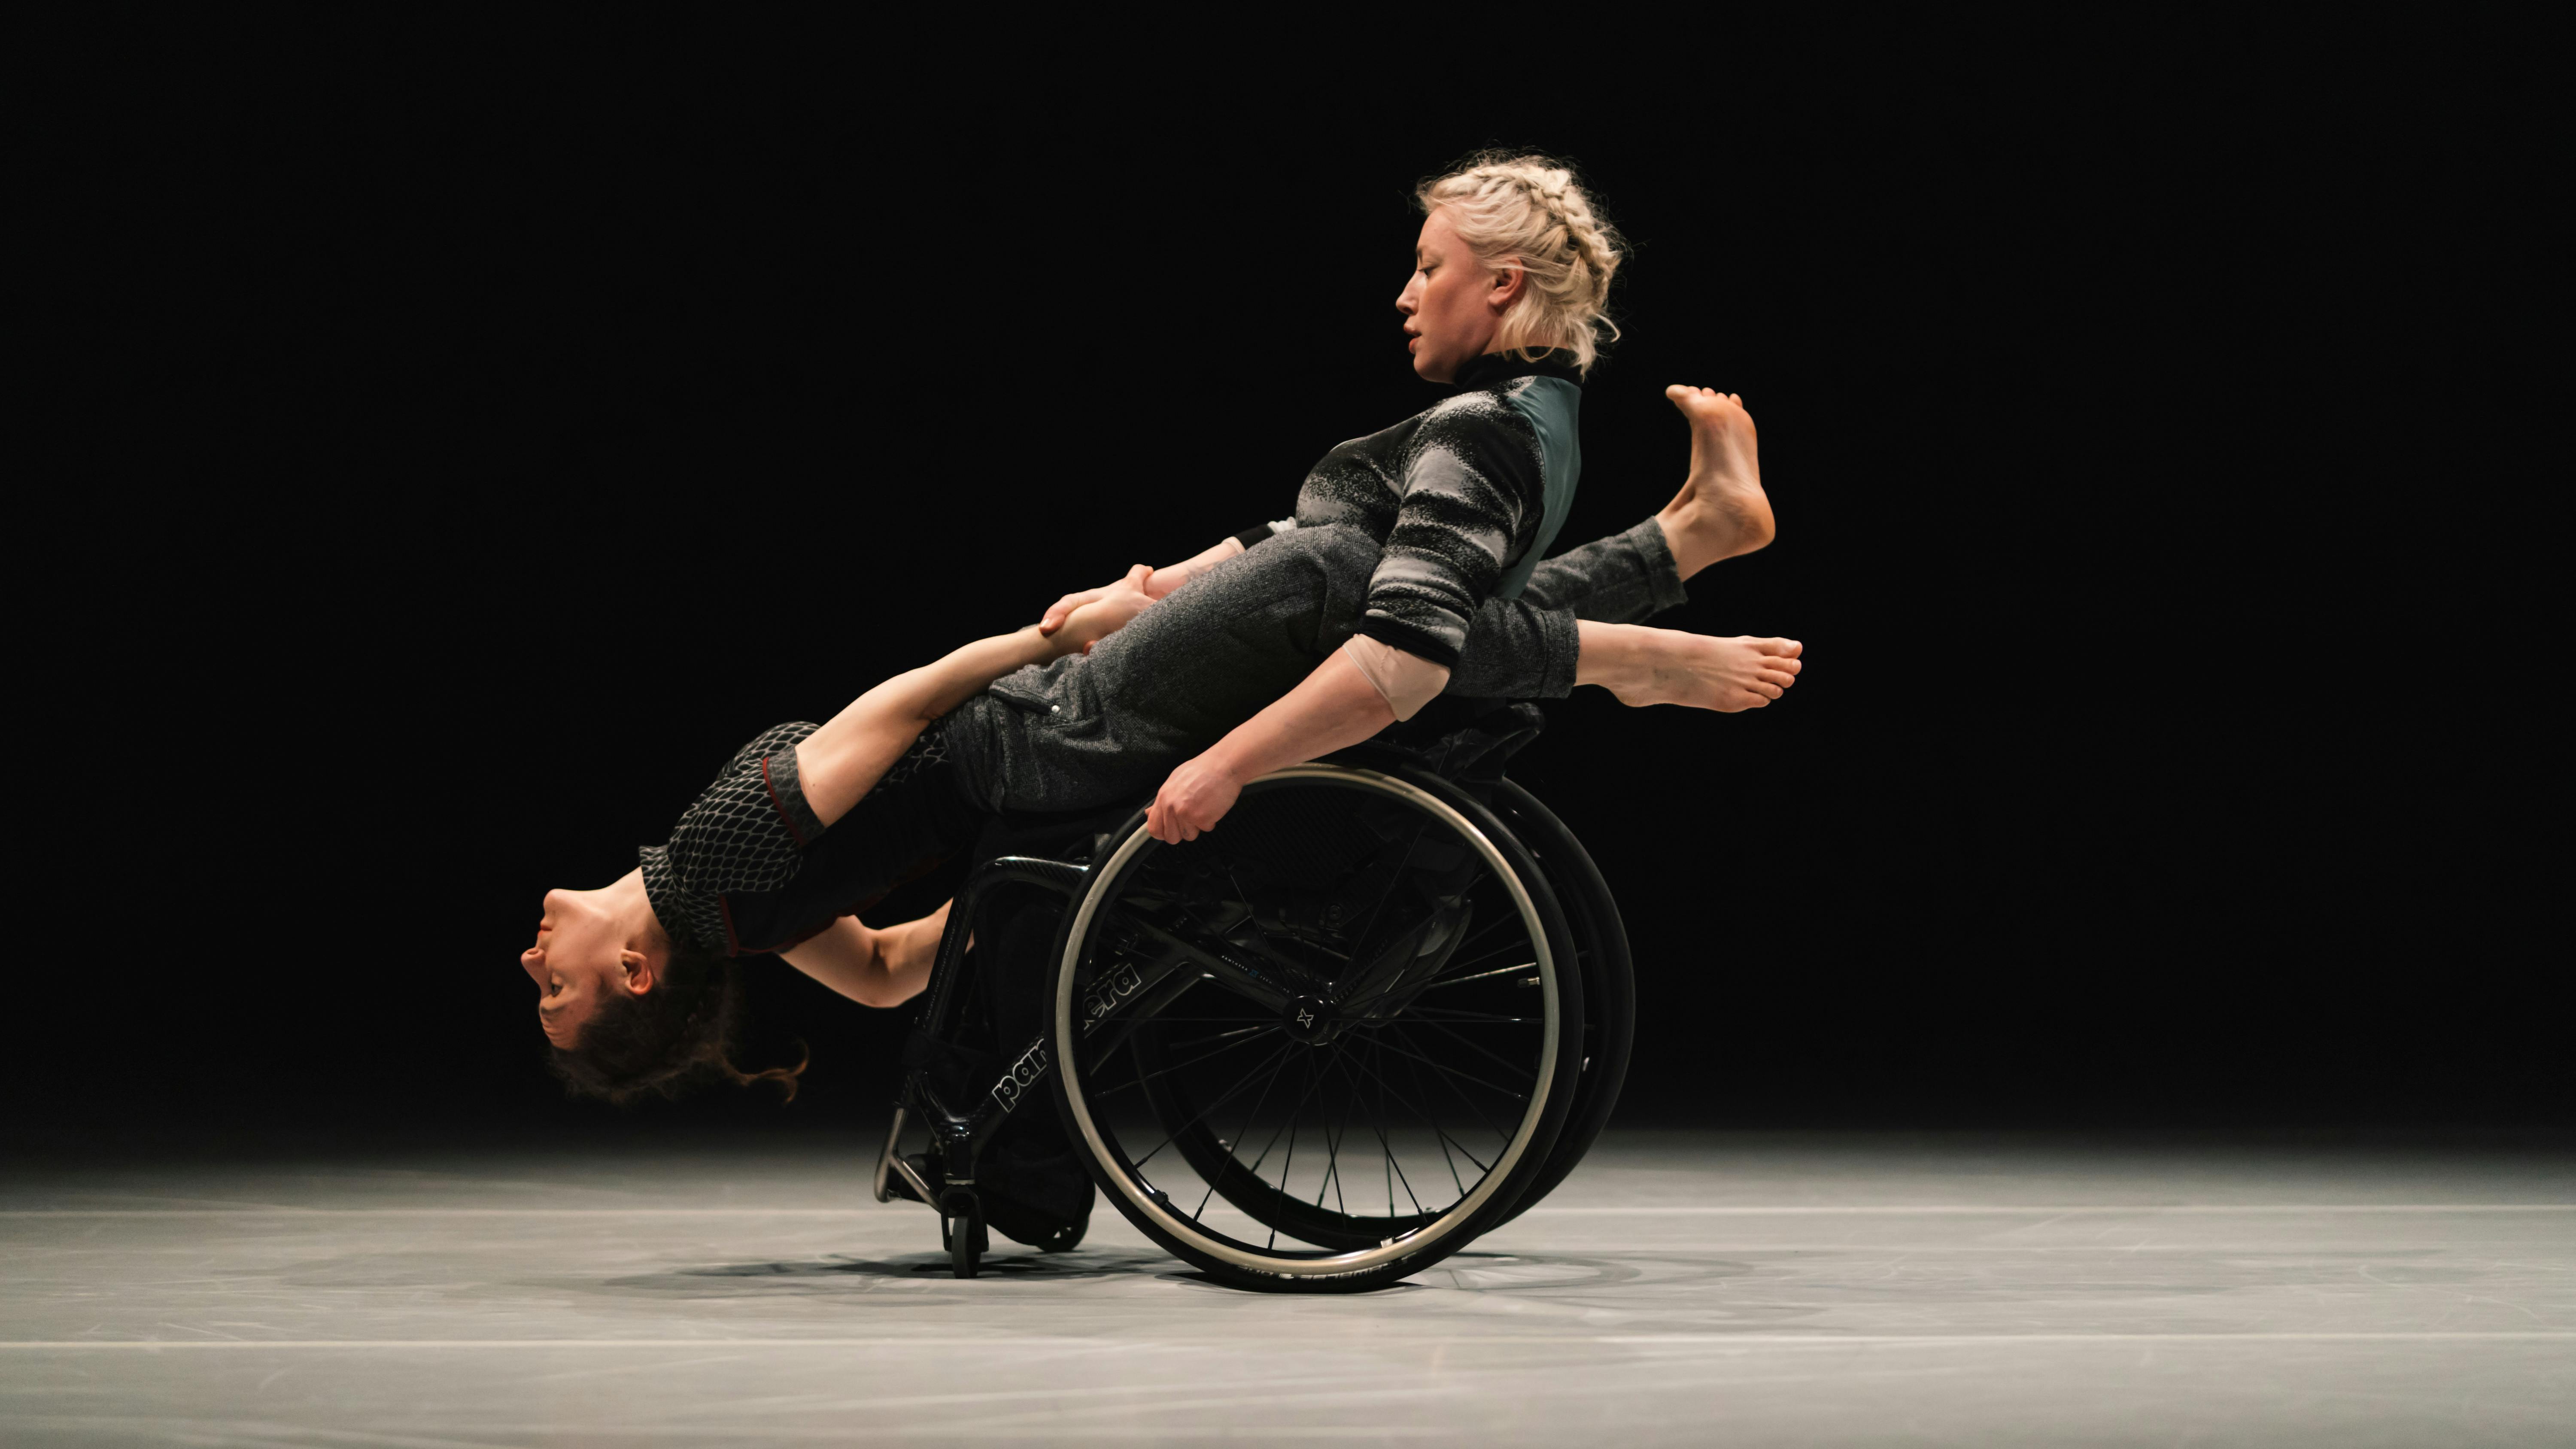 Una danzatrice con disabilità regge in equilibrio perpendicolare un'altra danzatrice.